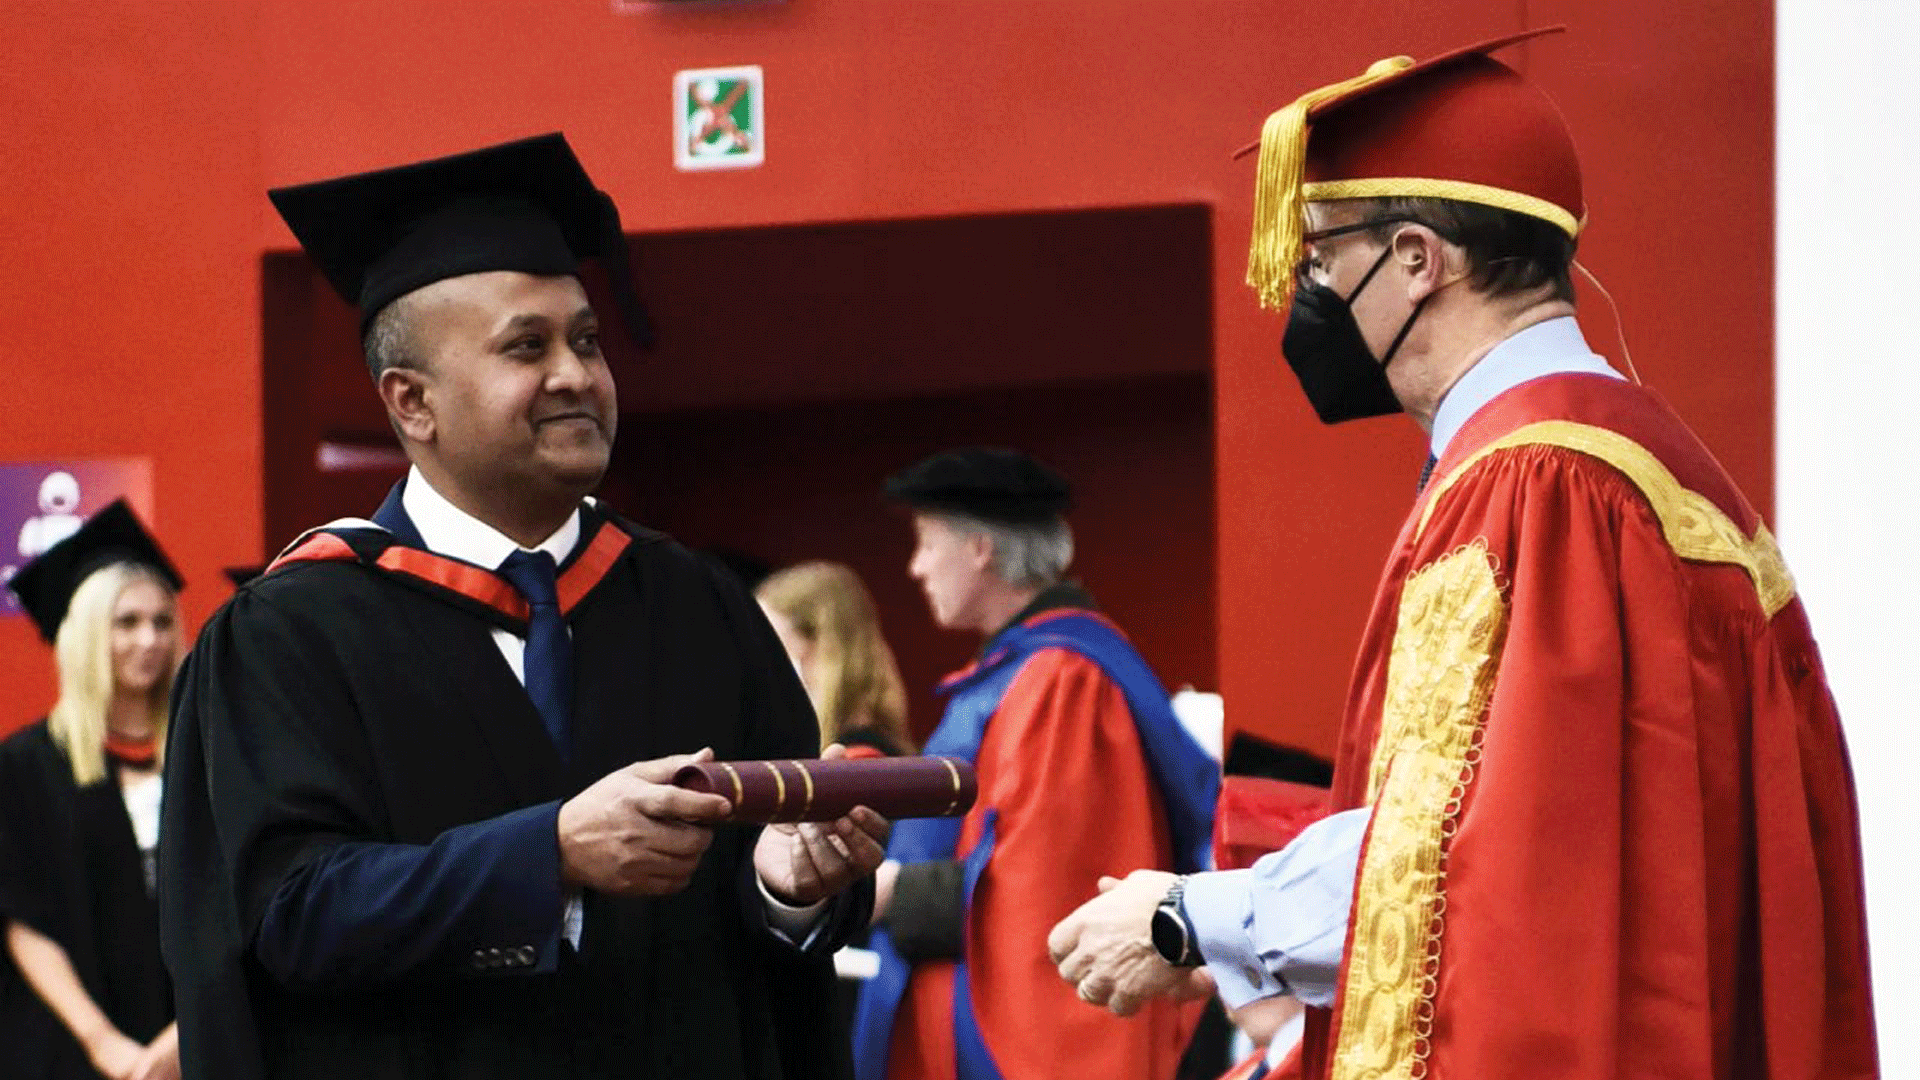 William gomes graduates